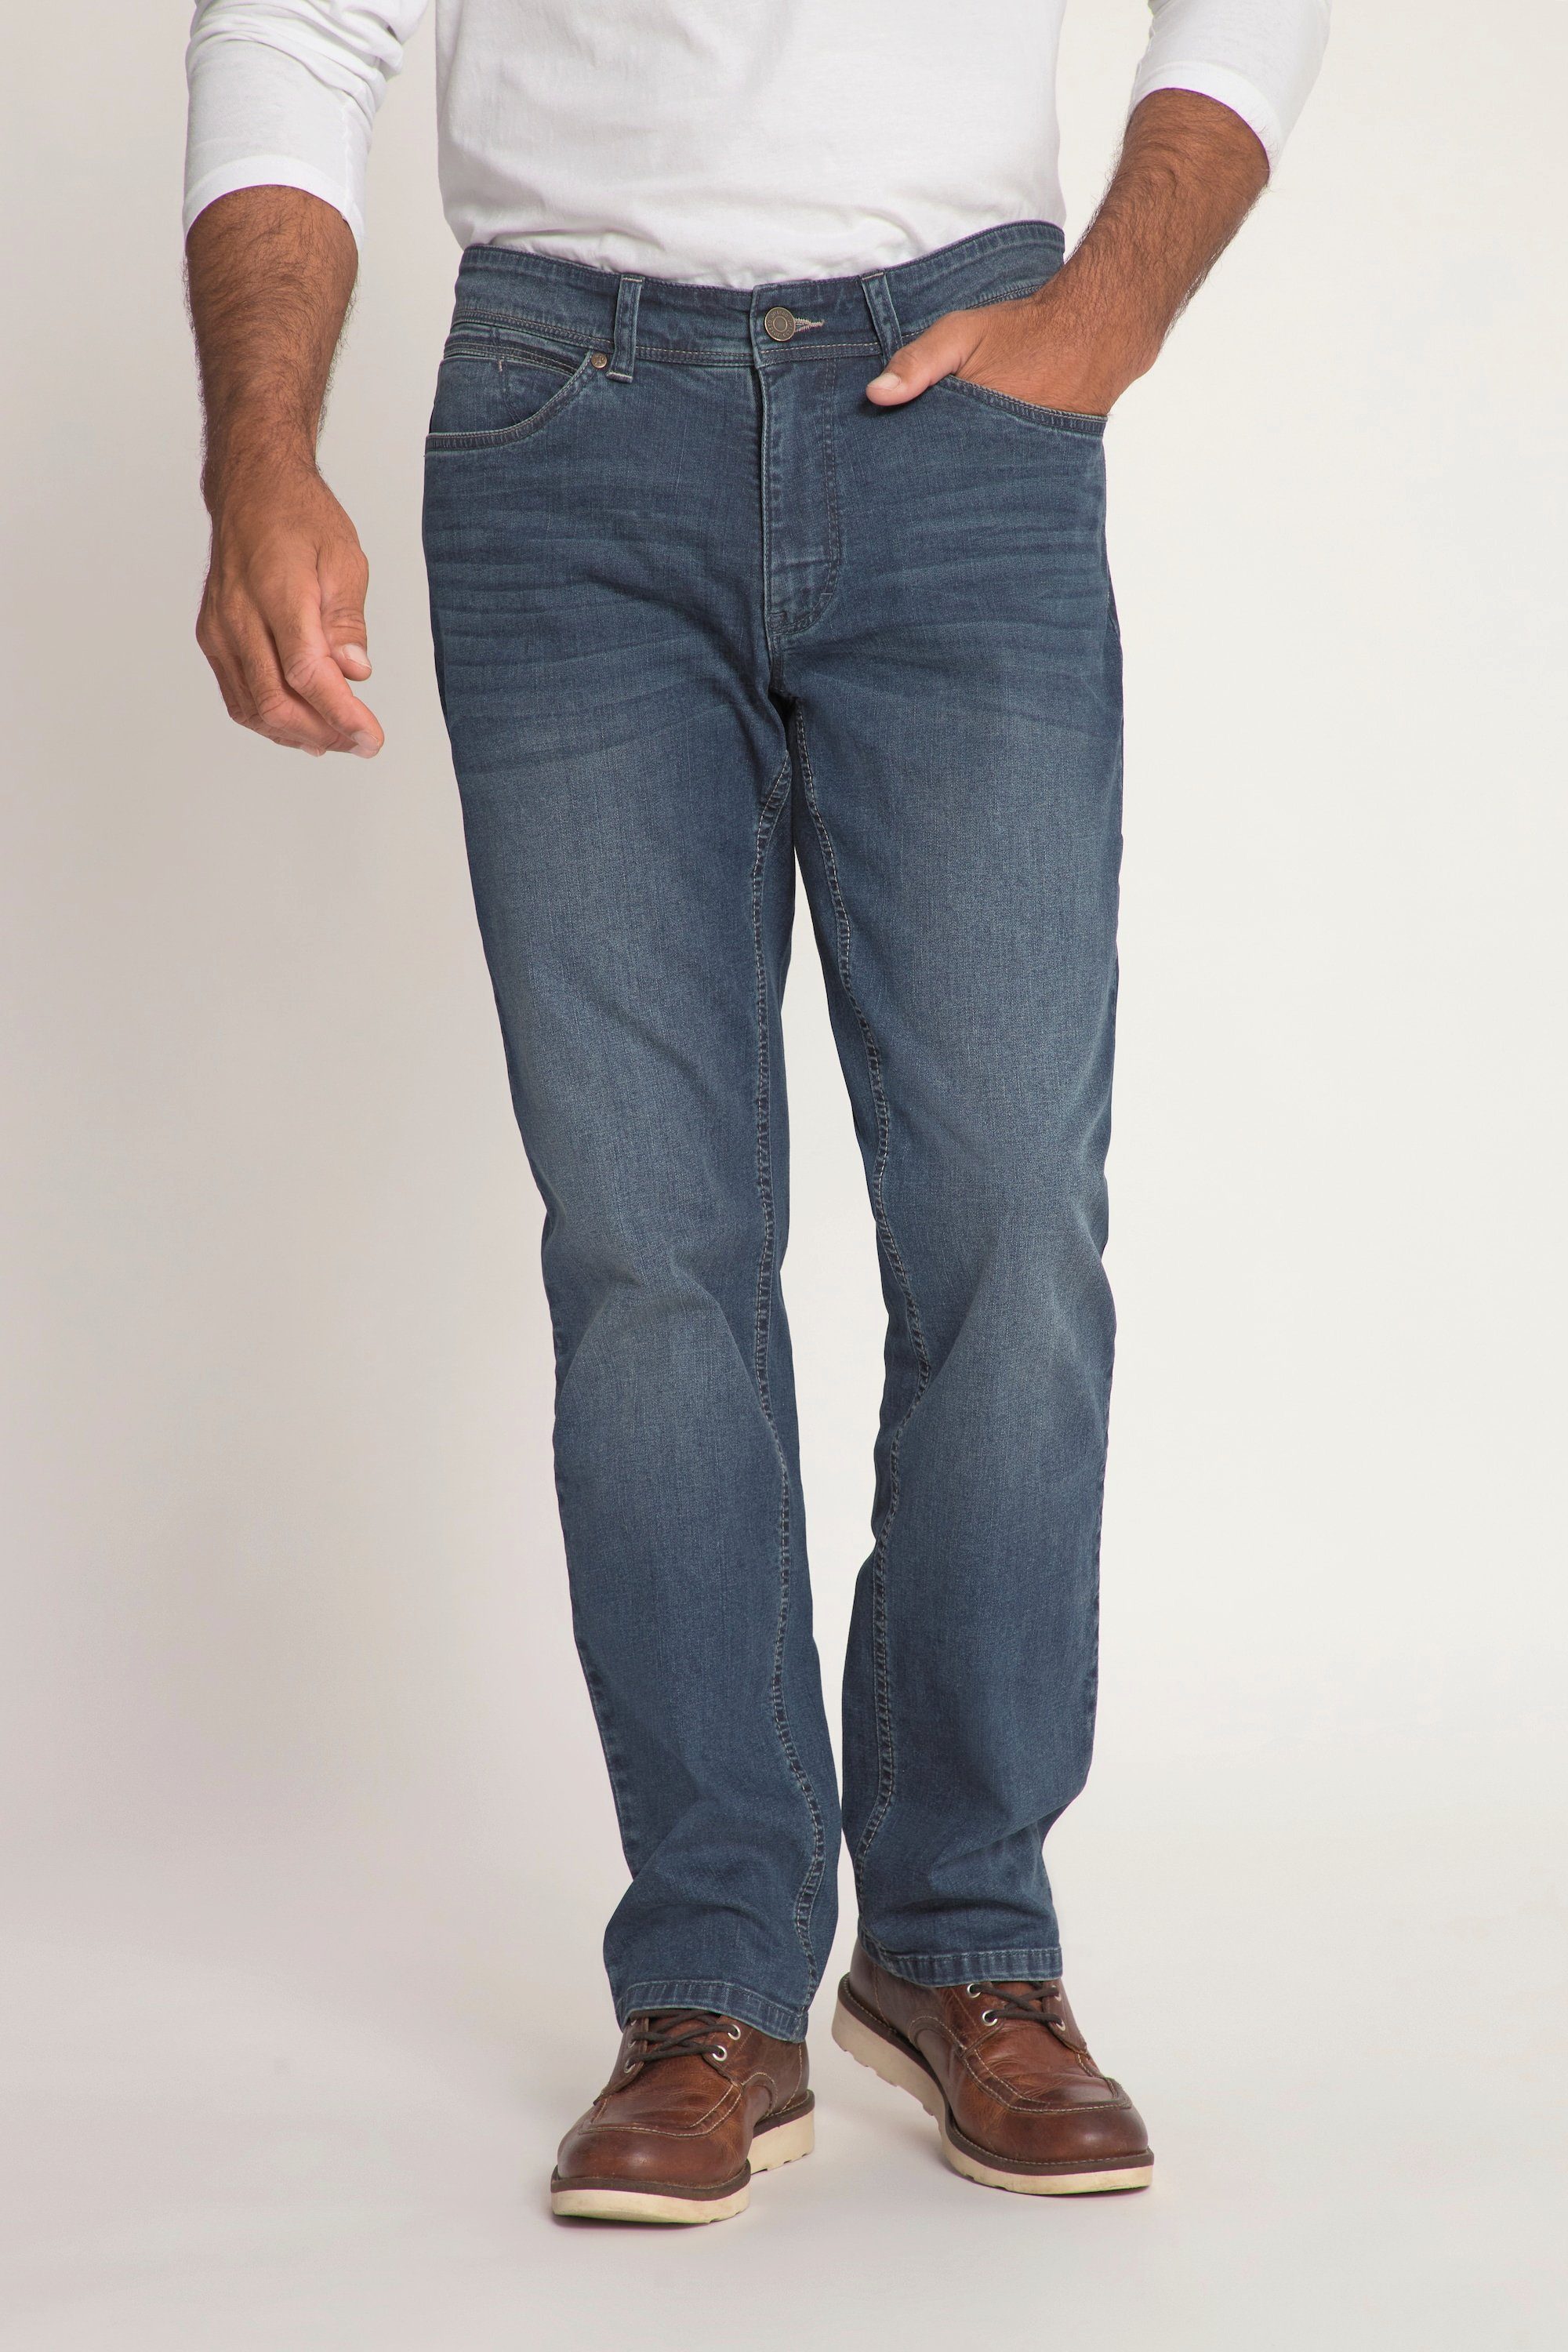 Fit Bauchfit 5-Pocket lightweight denim Cargohose Regular JP1880 Jeans blue dark